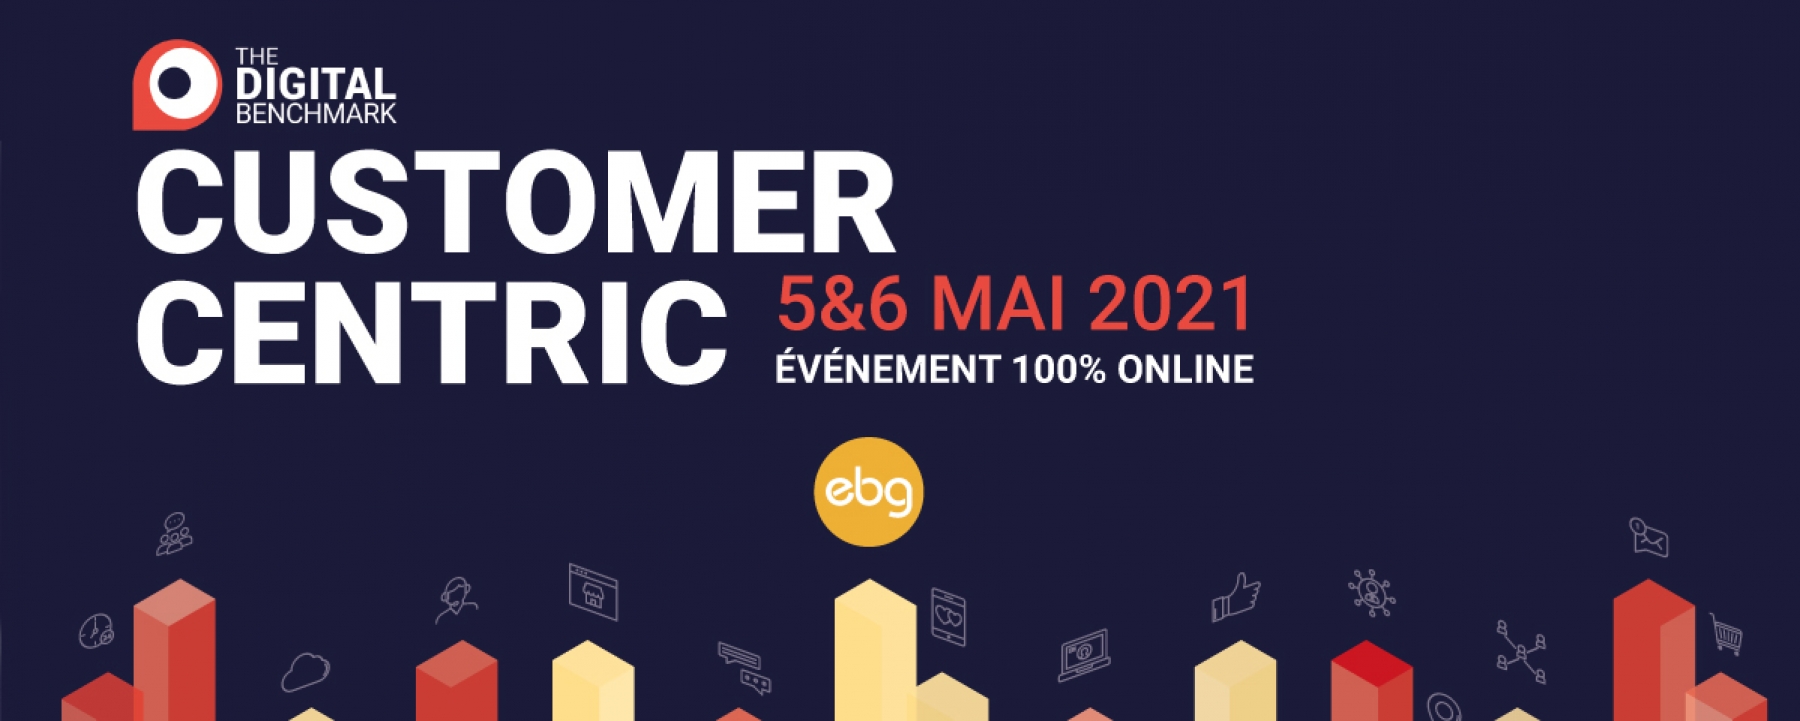 Digital Benchmark - Customer Centric, organisé par EBG les 5 et 6 mai 2021